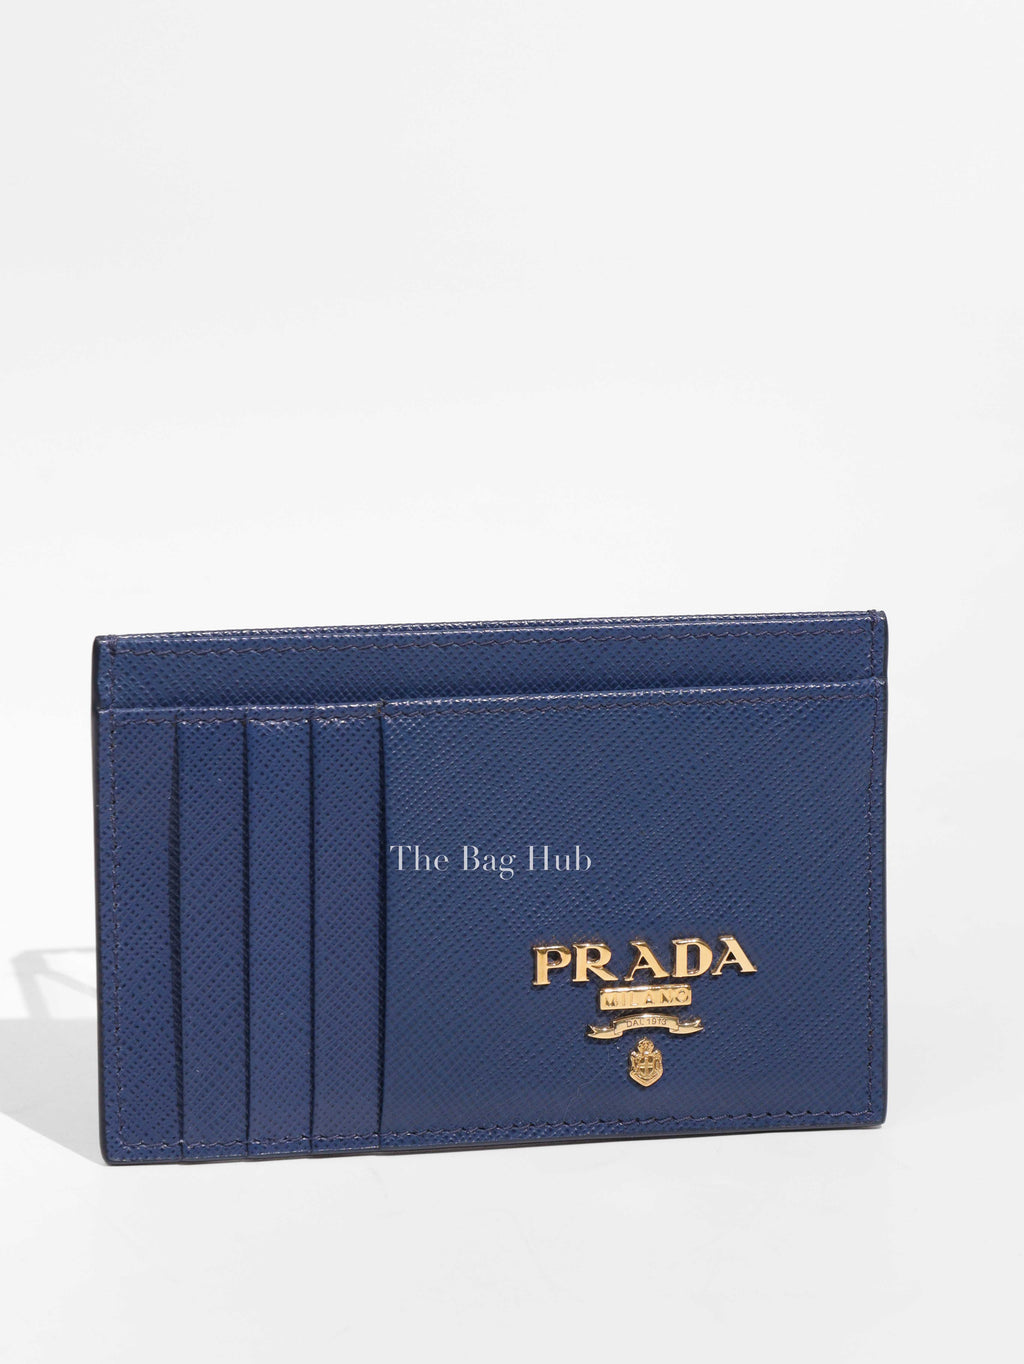 Prada Bluette Saffiano Card Holder 1MC053-1